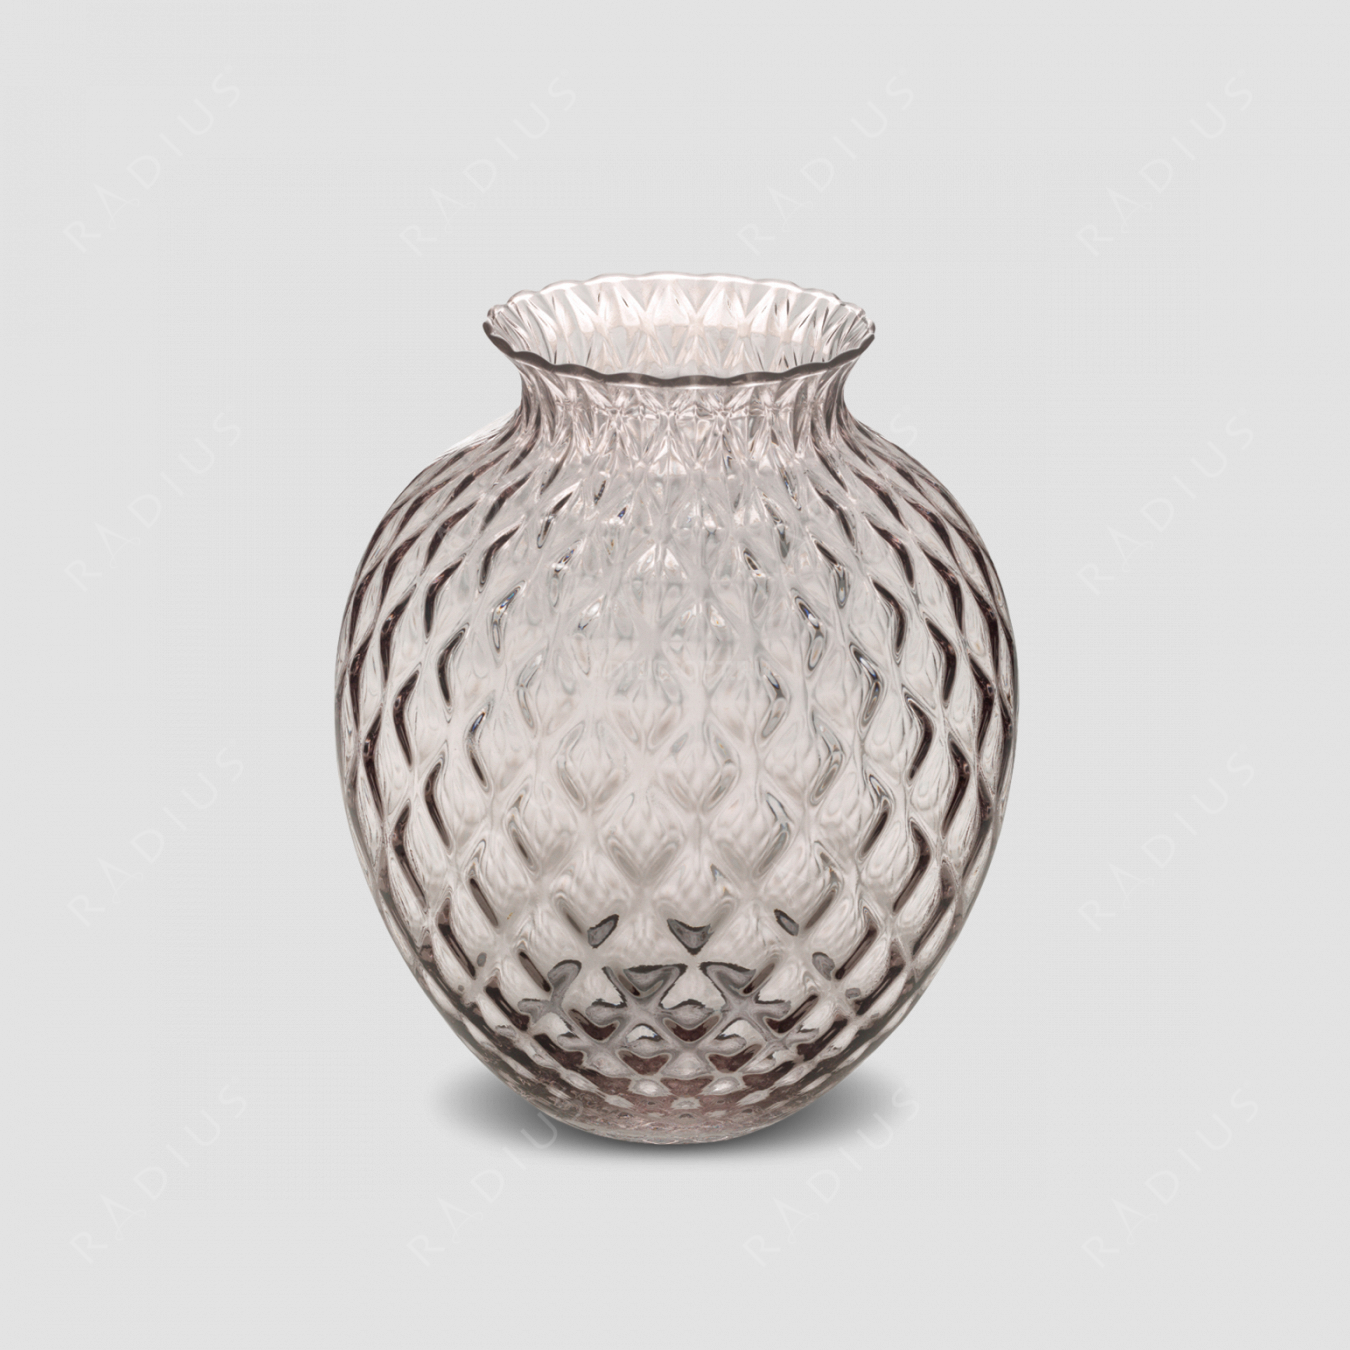 Стеклянная ваза для цветов, диаметр: 23,8 см, высота: 28,5 см, материал: стекло, цвет: дымчатый, серия Infiore, IVV (Italy), Италия